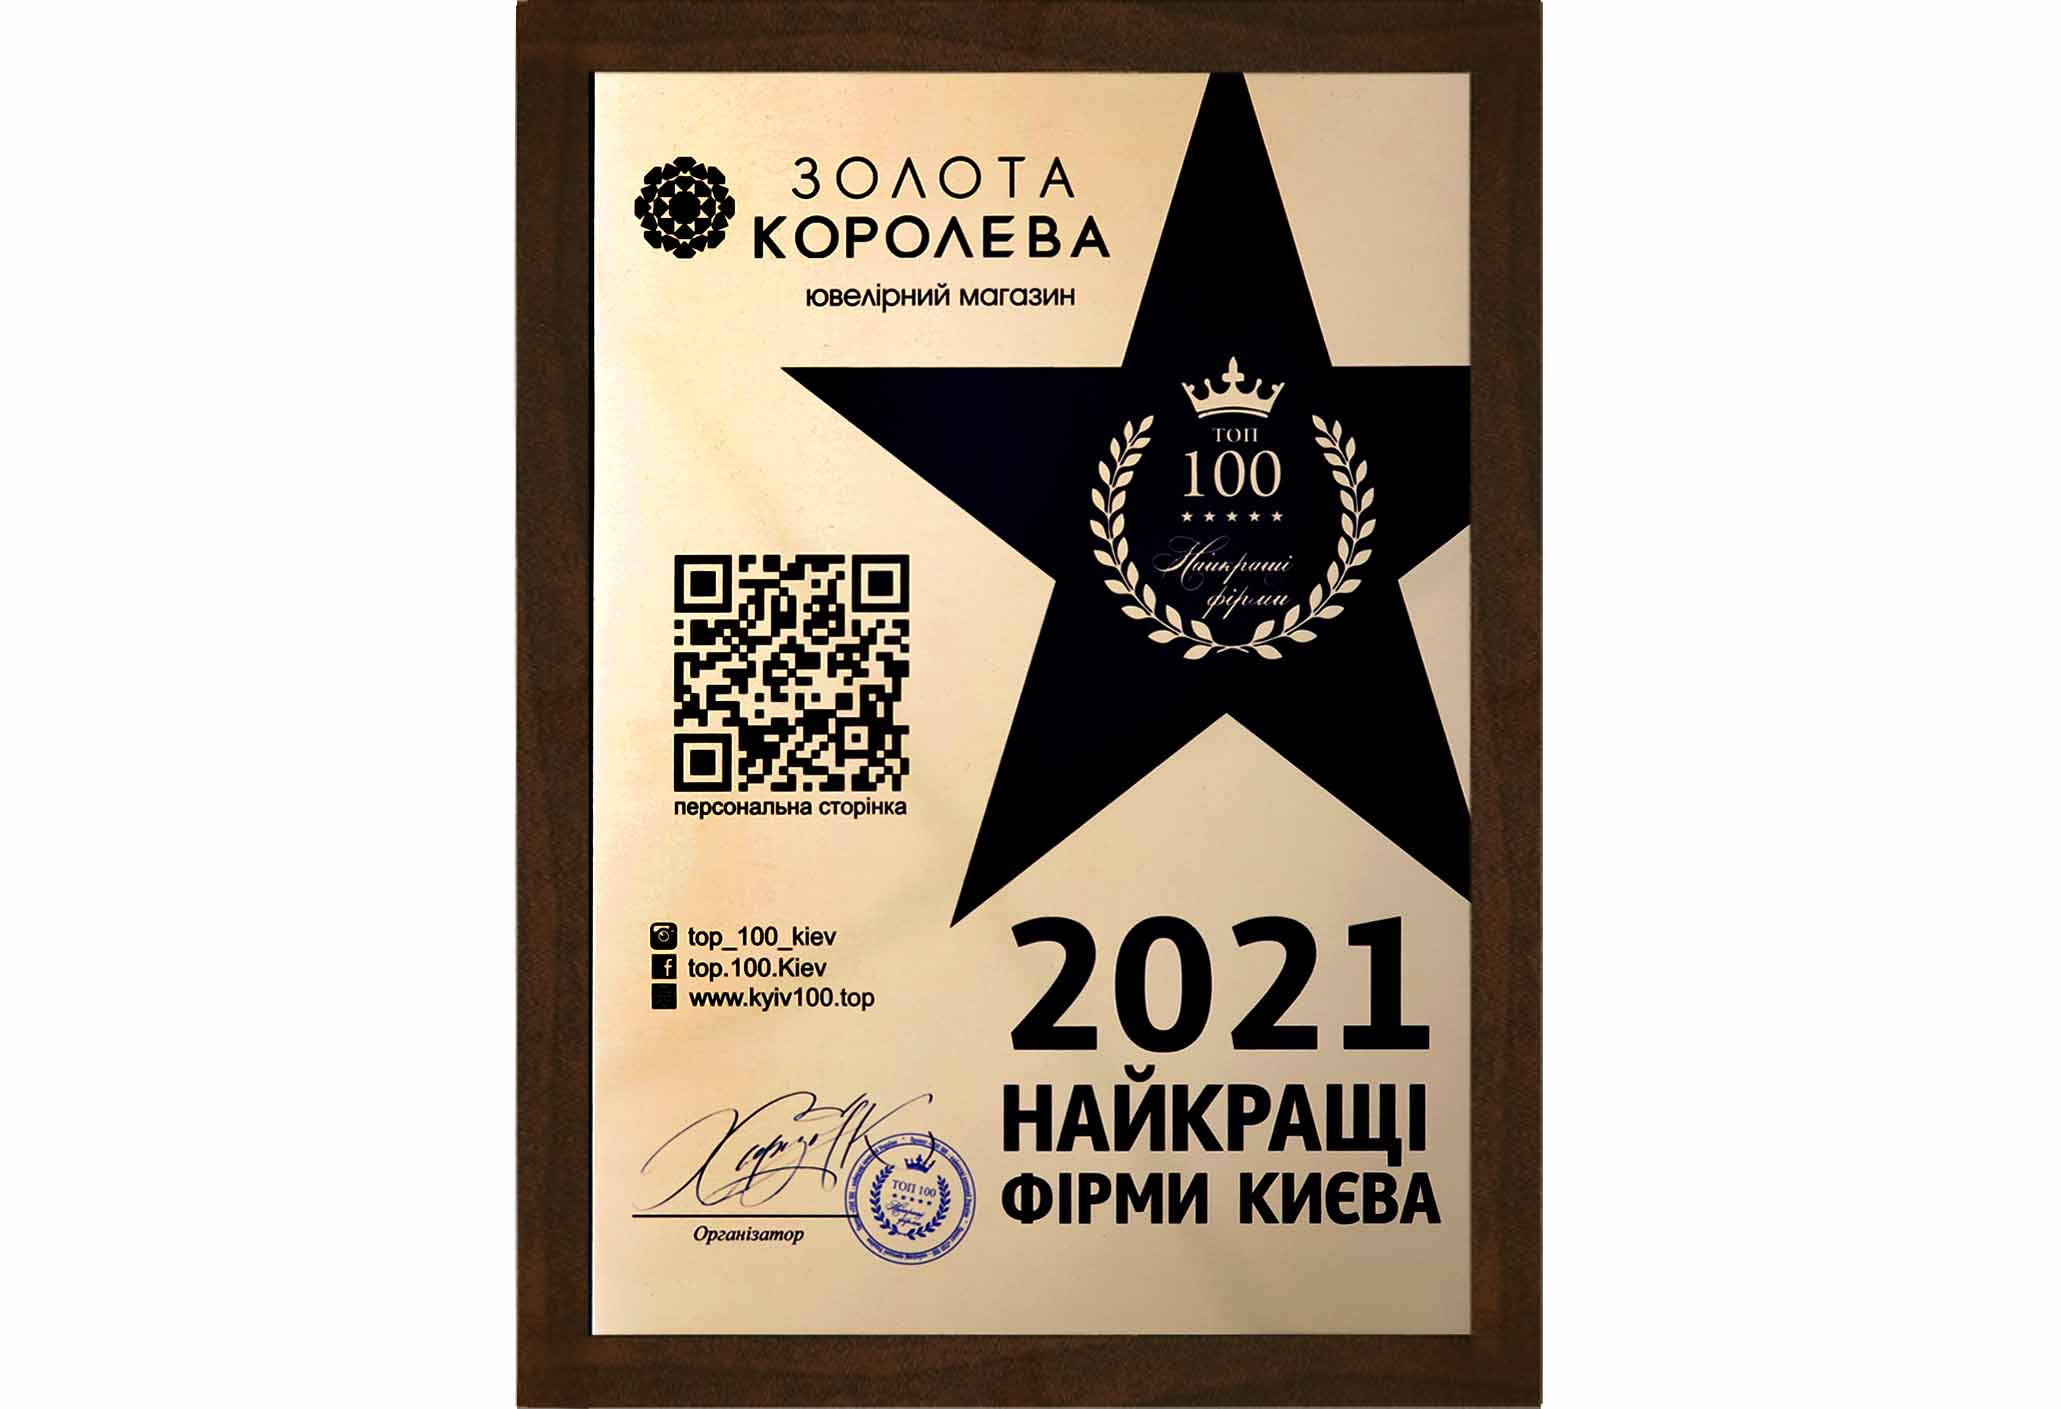 Наилучшая фирма Киева 2021- ювелирный магазин Золотая королева